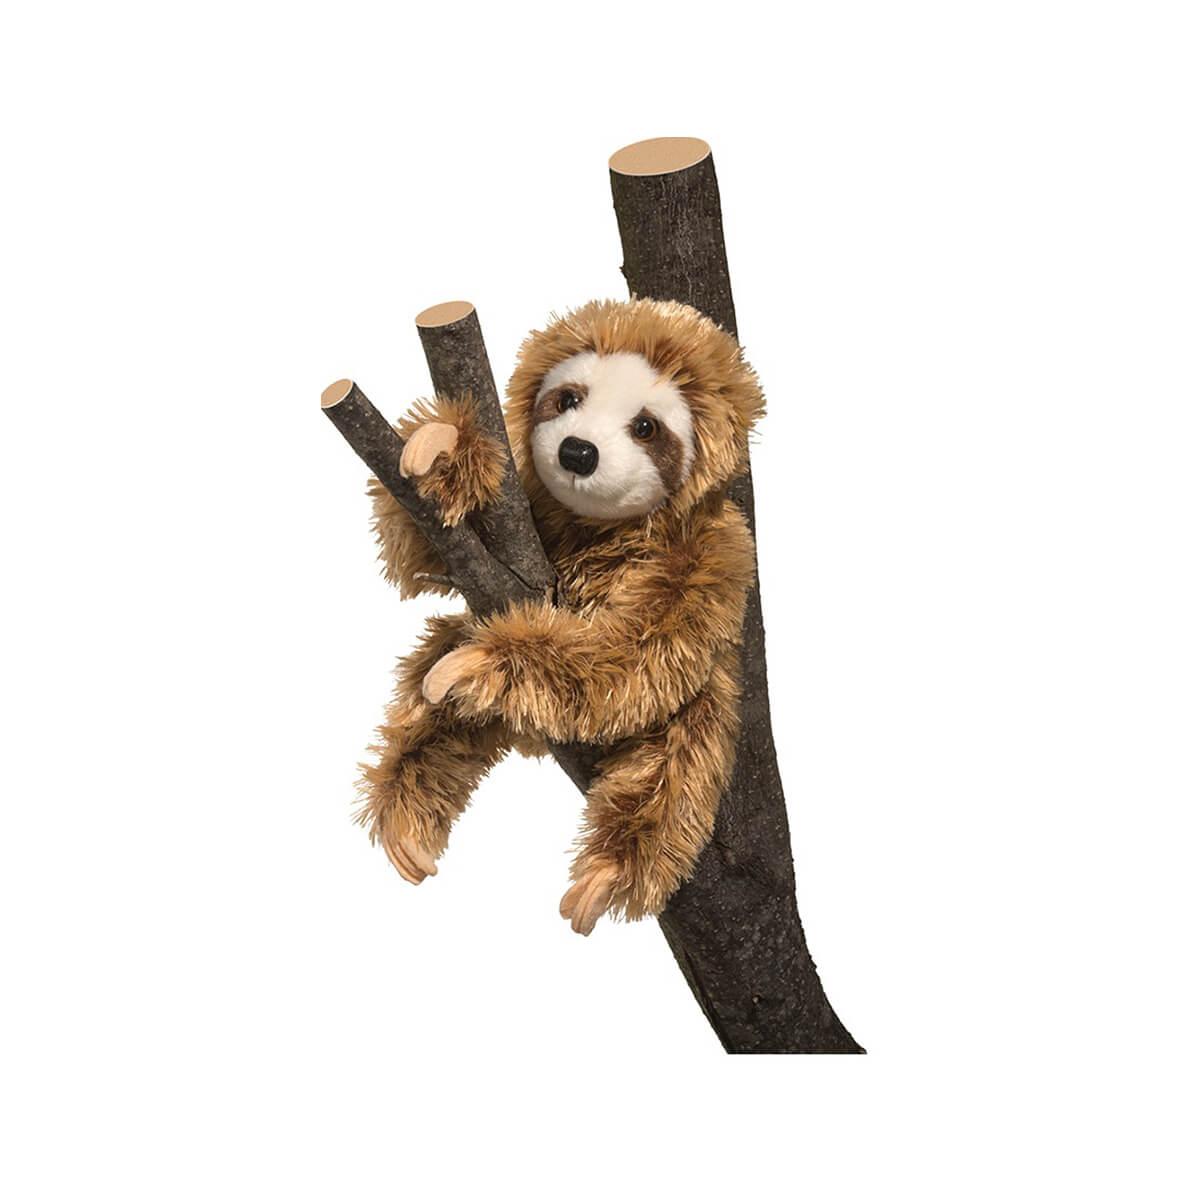  Simon Sloth Plush Toy